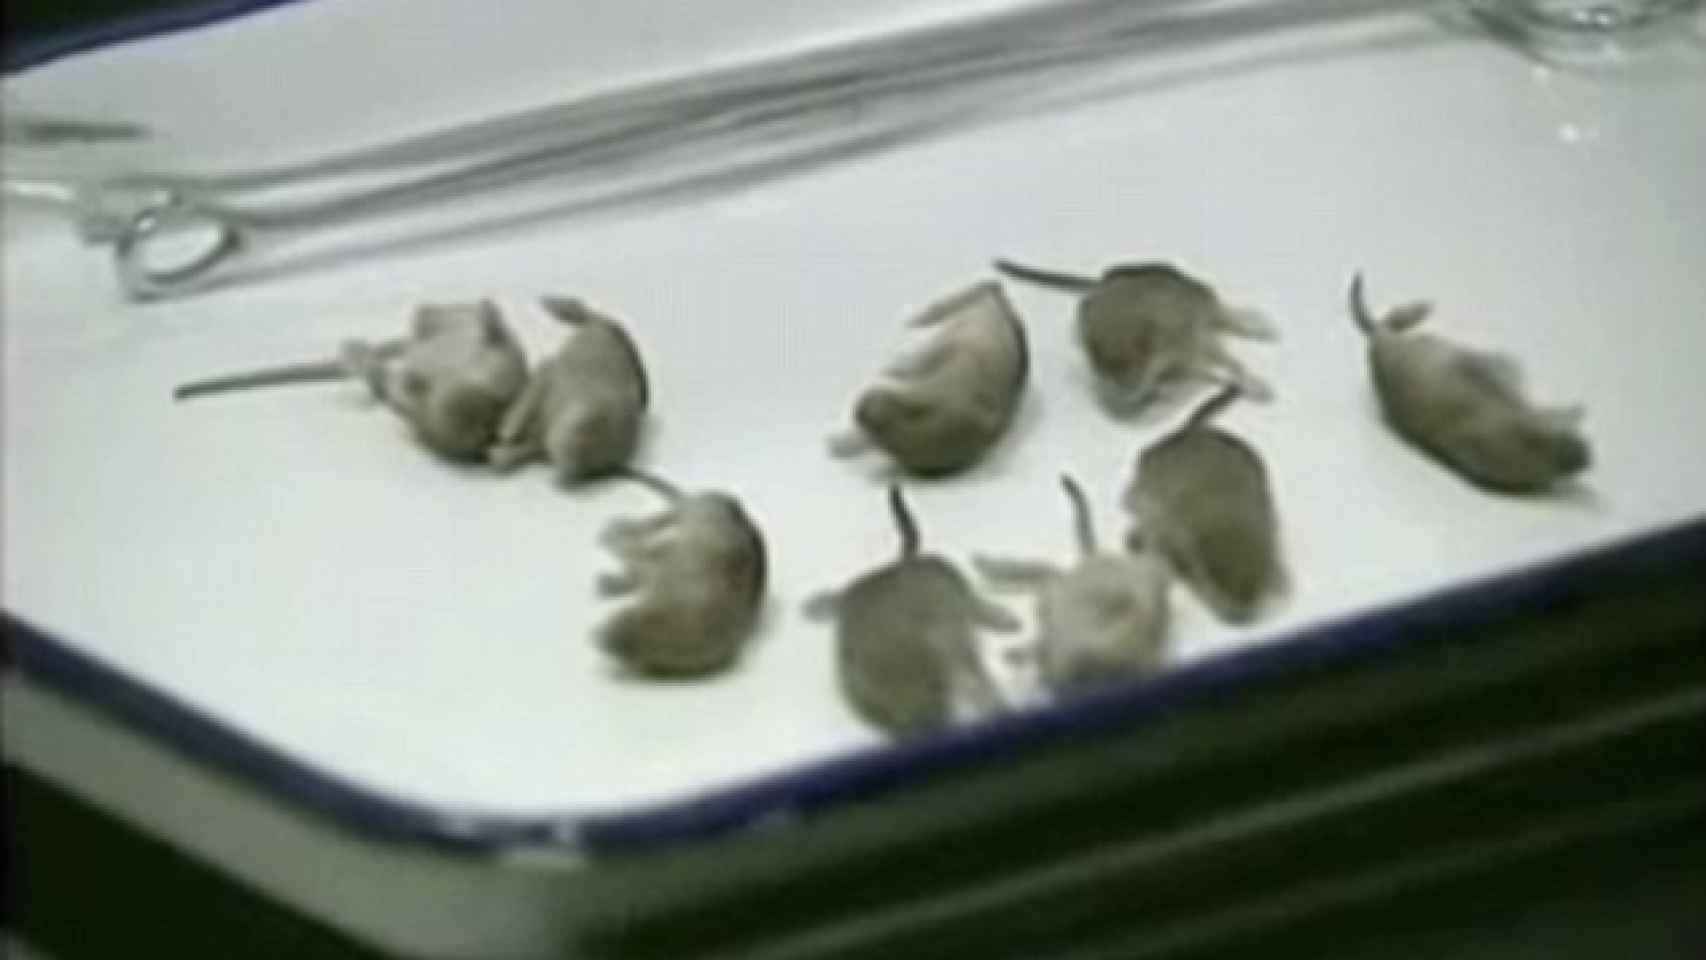 Ratones descubiertos en un avión en pleno vuelo.